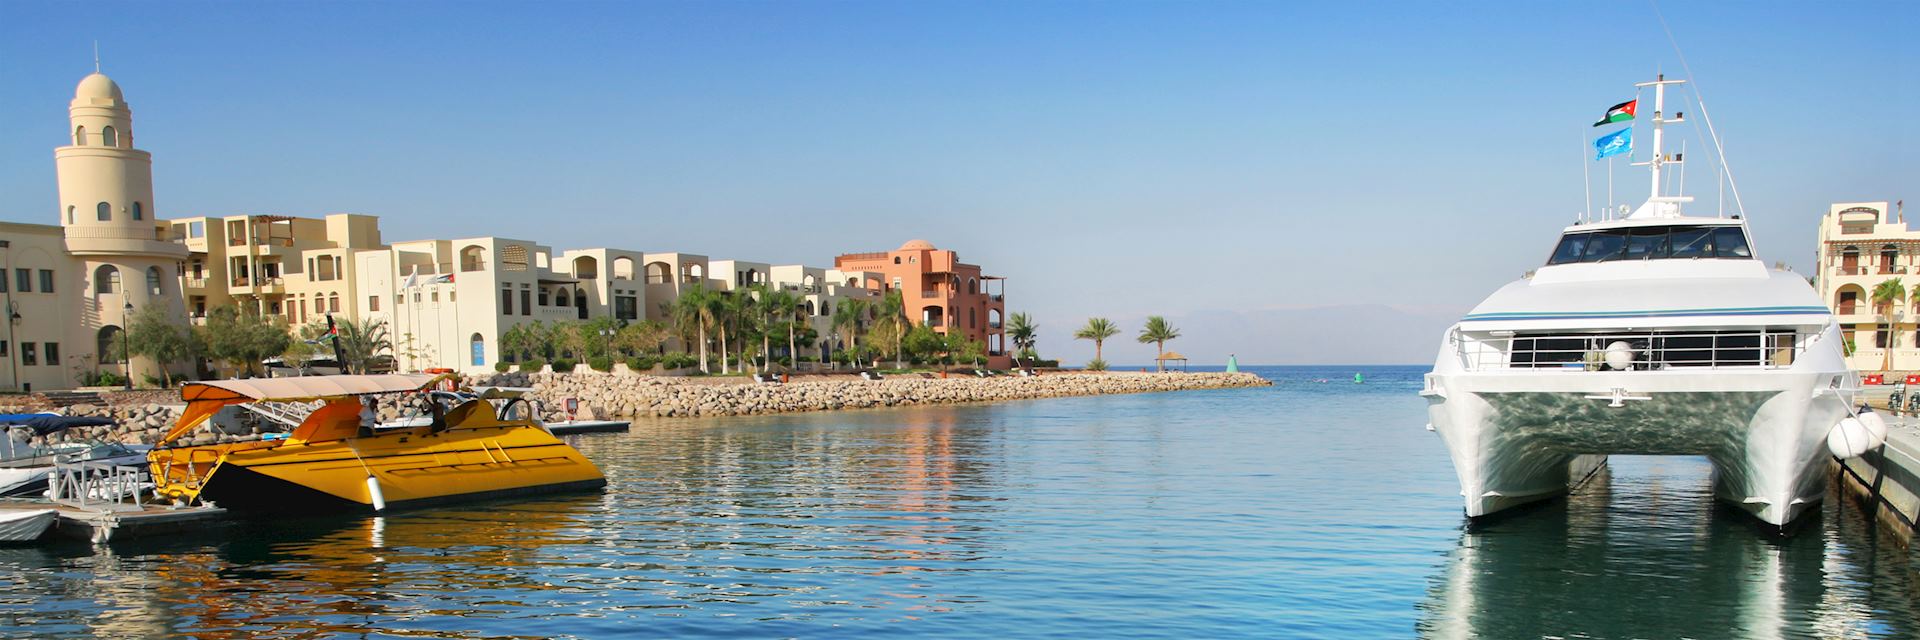 Tala Bay, Aqaba